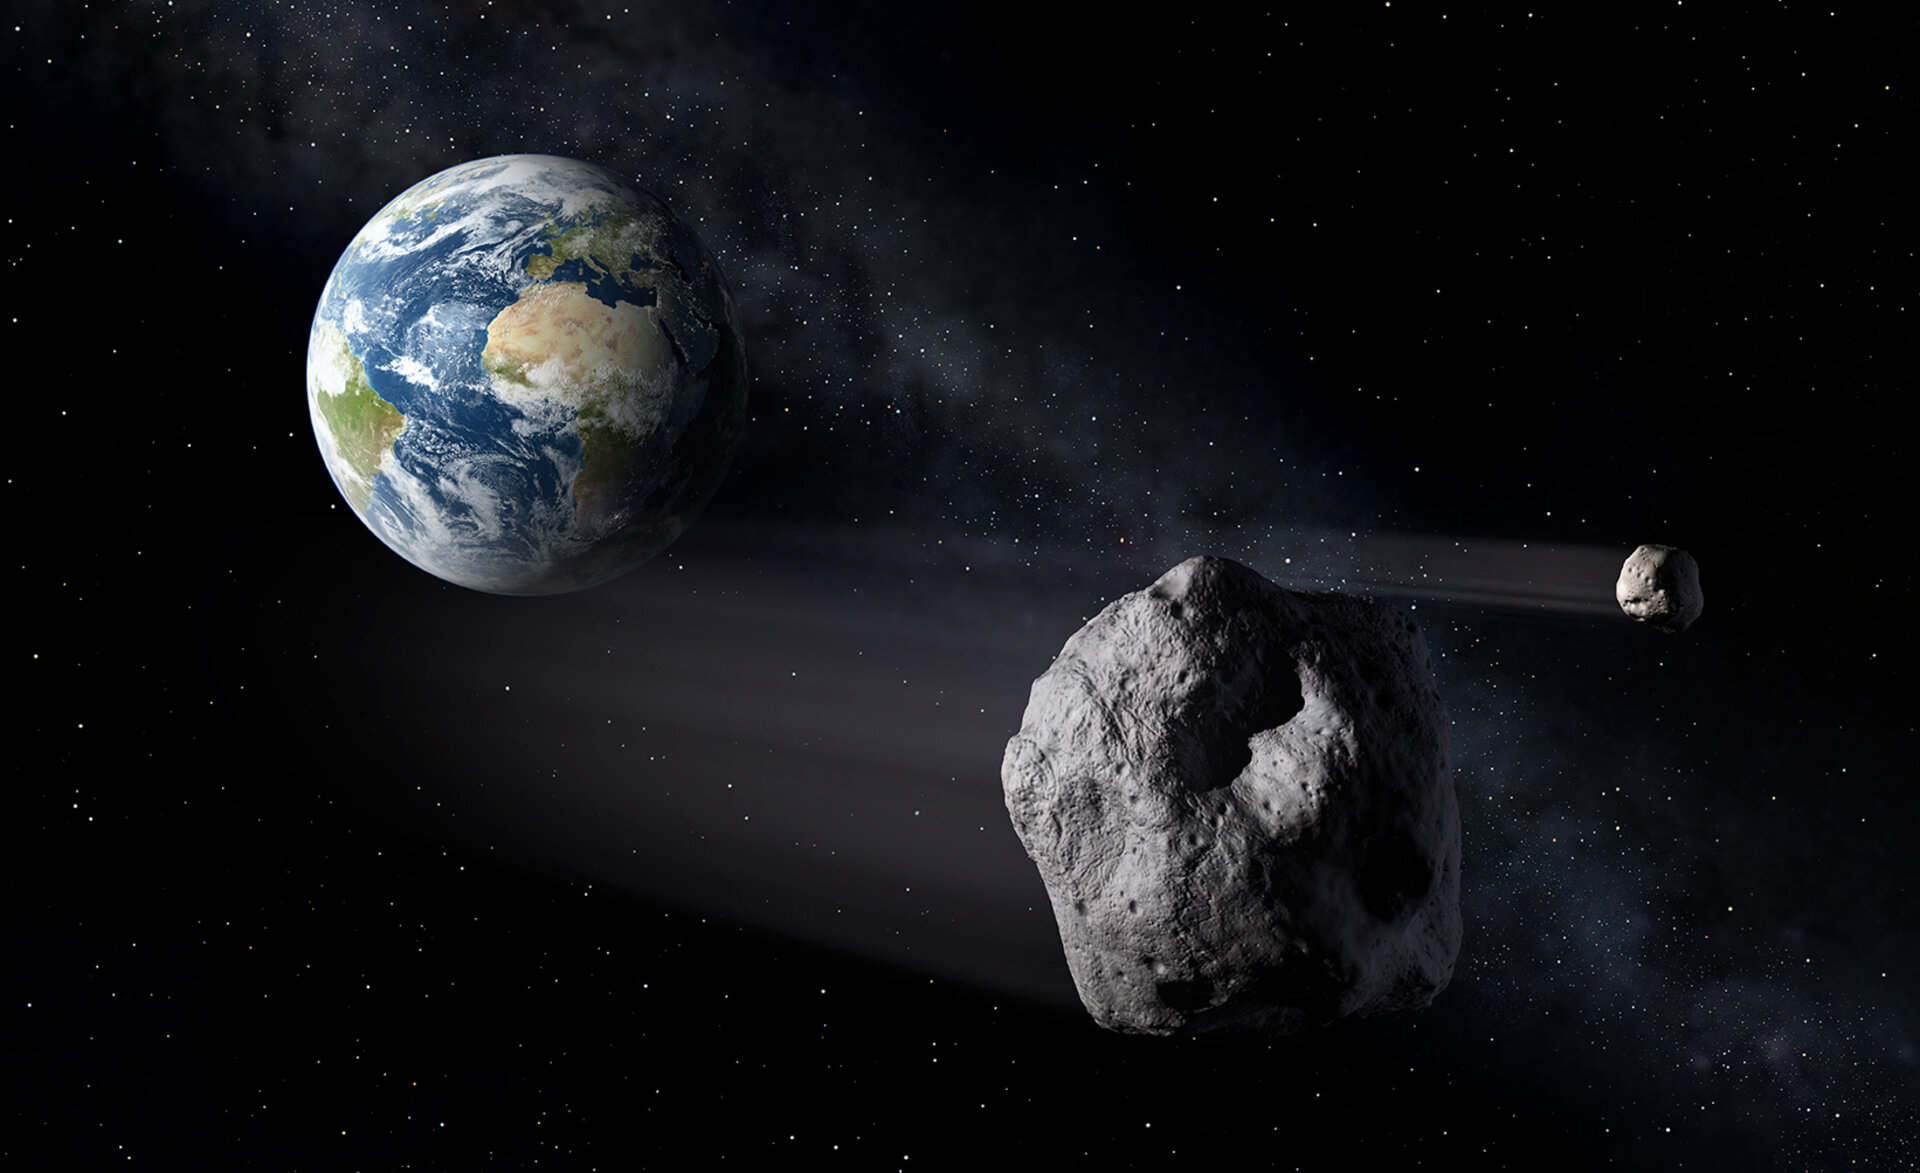 Esa - Esa To Live Tweet Asteroid Impact Exercise